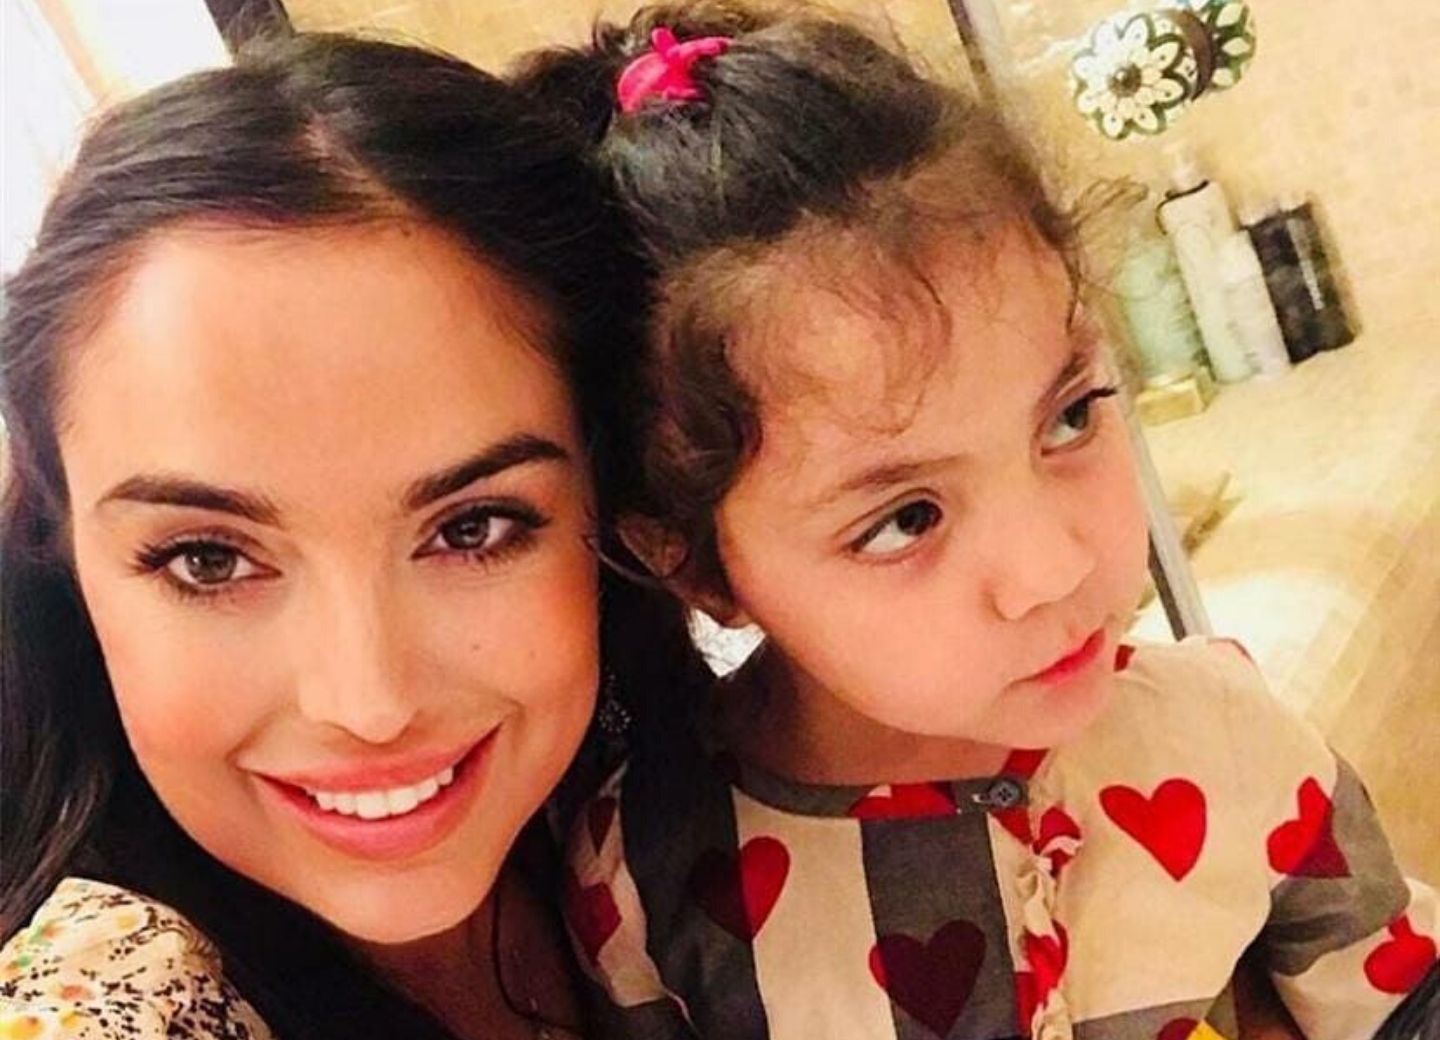 Лейла Алиева посвятила пост дочери: «Очень люблю!..» - ФОТО